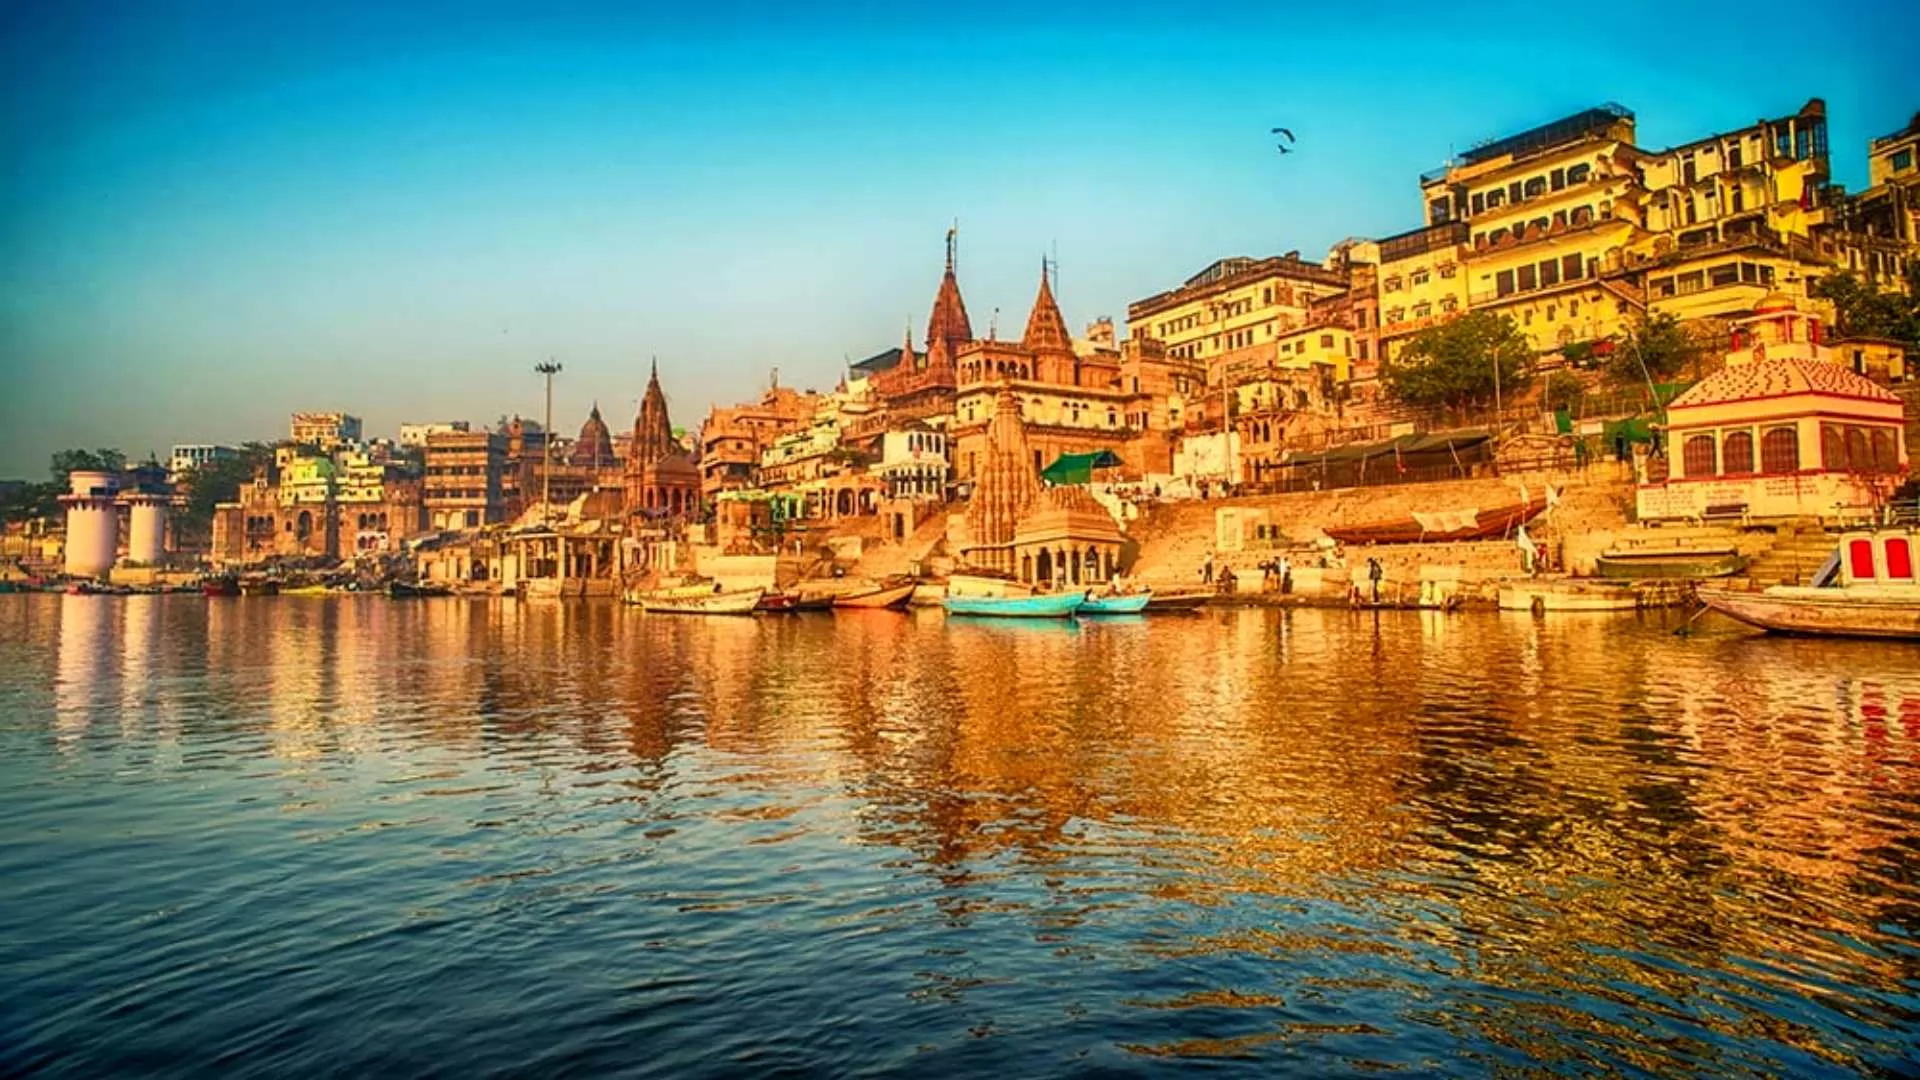 Varanasi: The City of Light